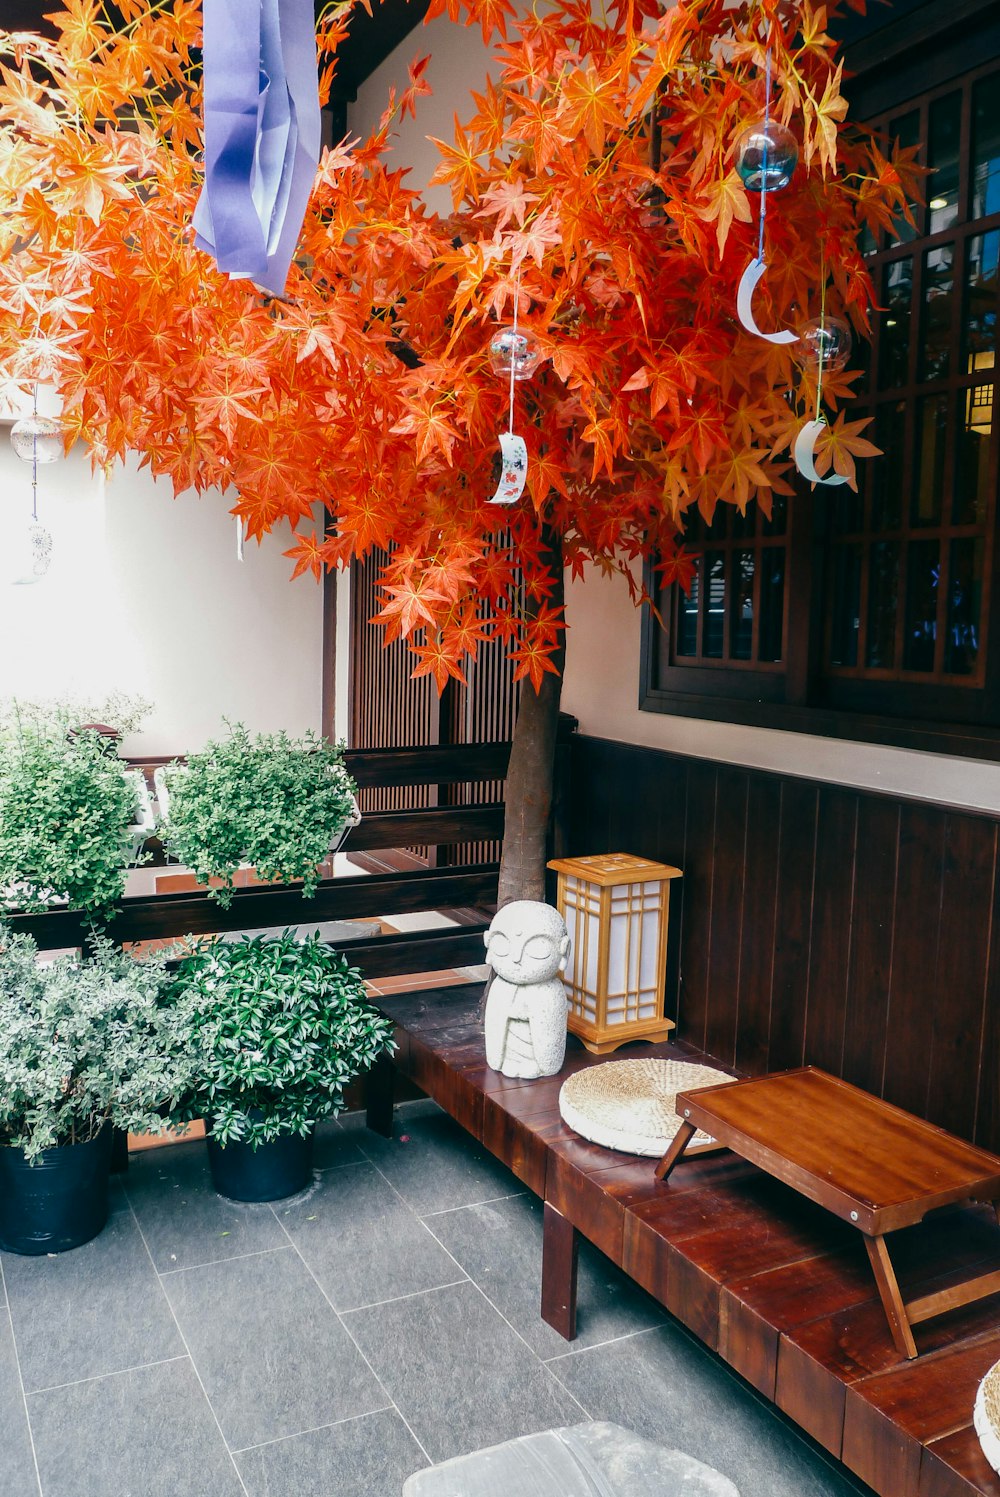 una panca di legno seduta sotto un albero pieno di foglie d'arancio